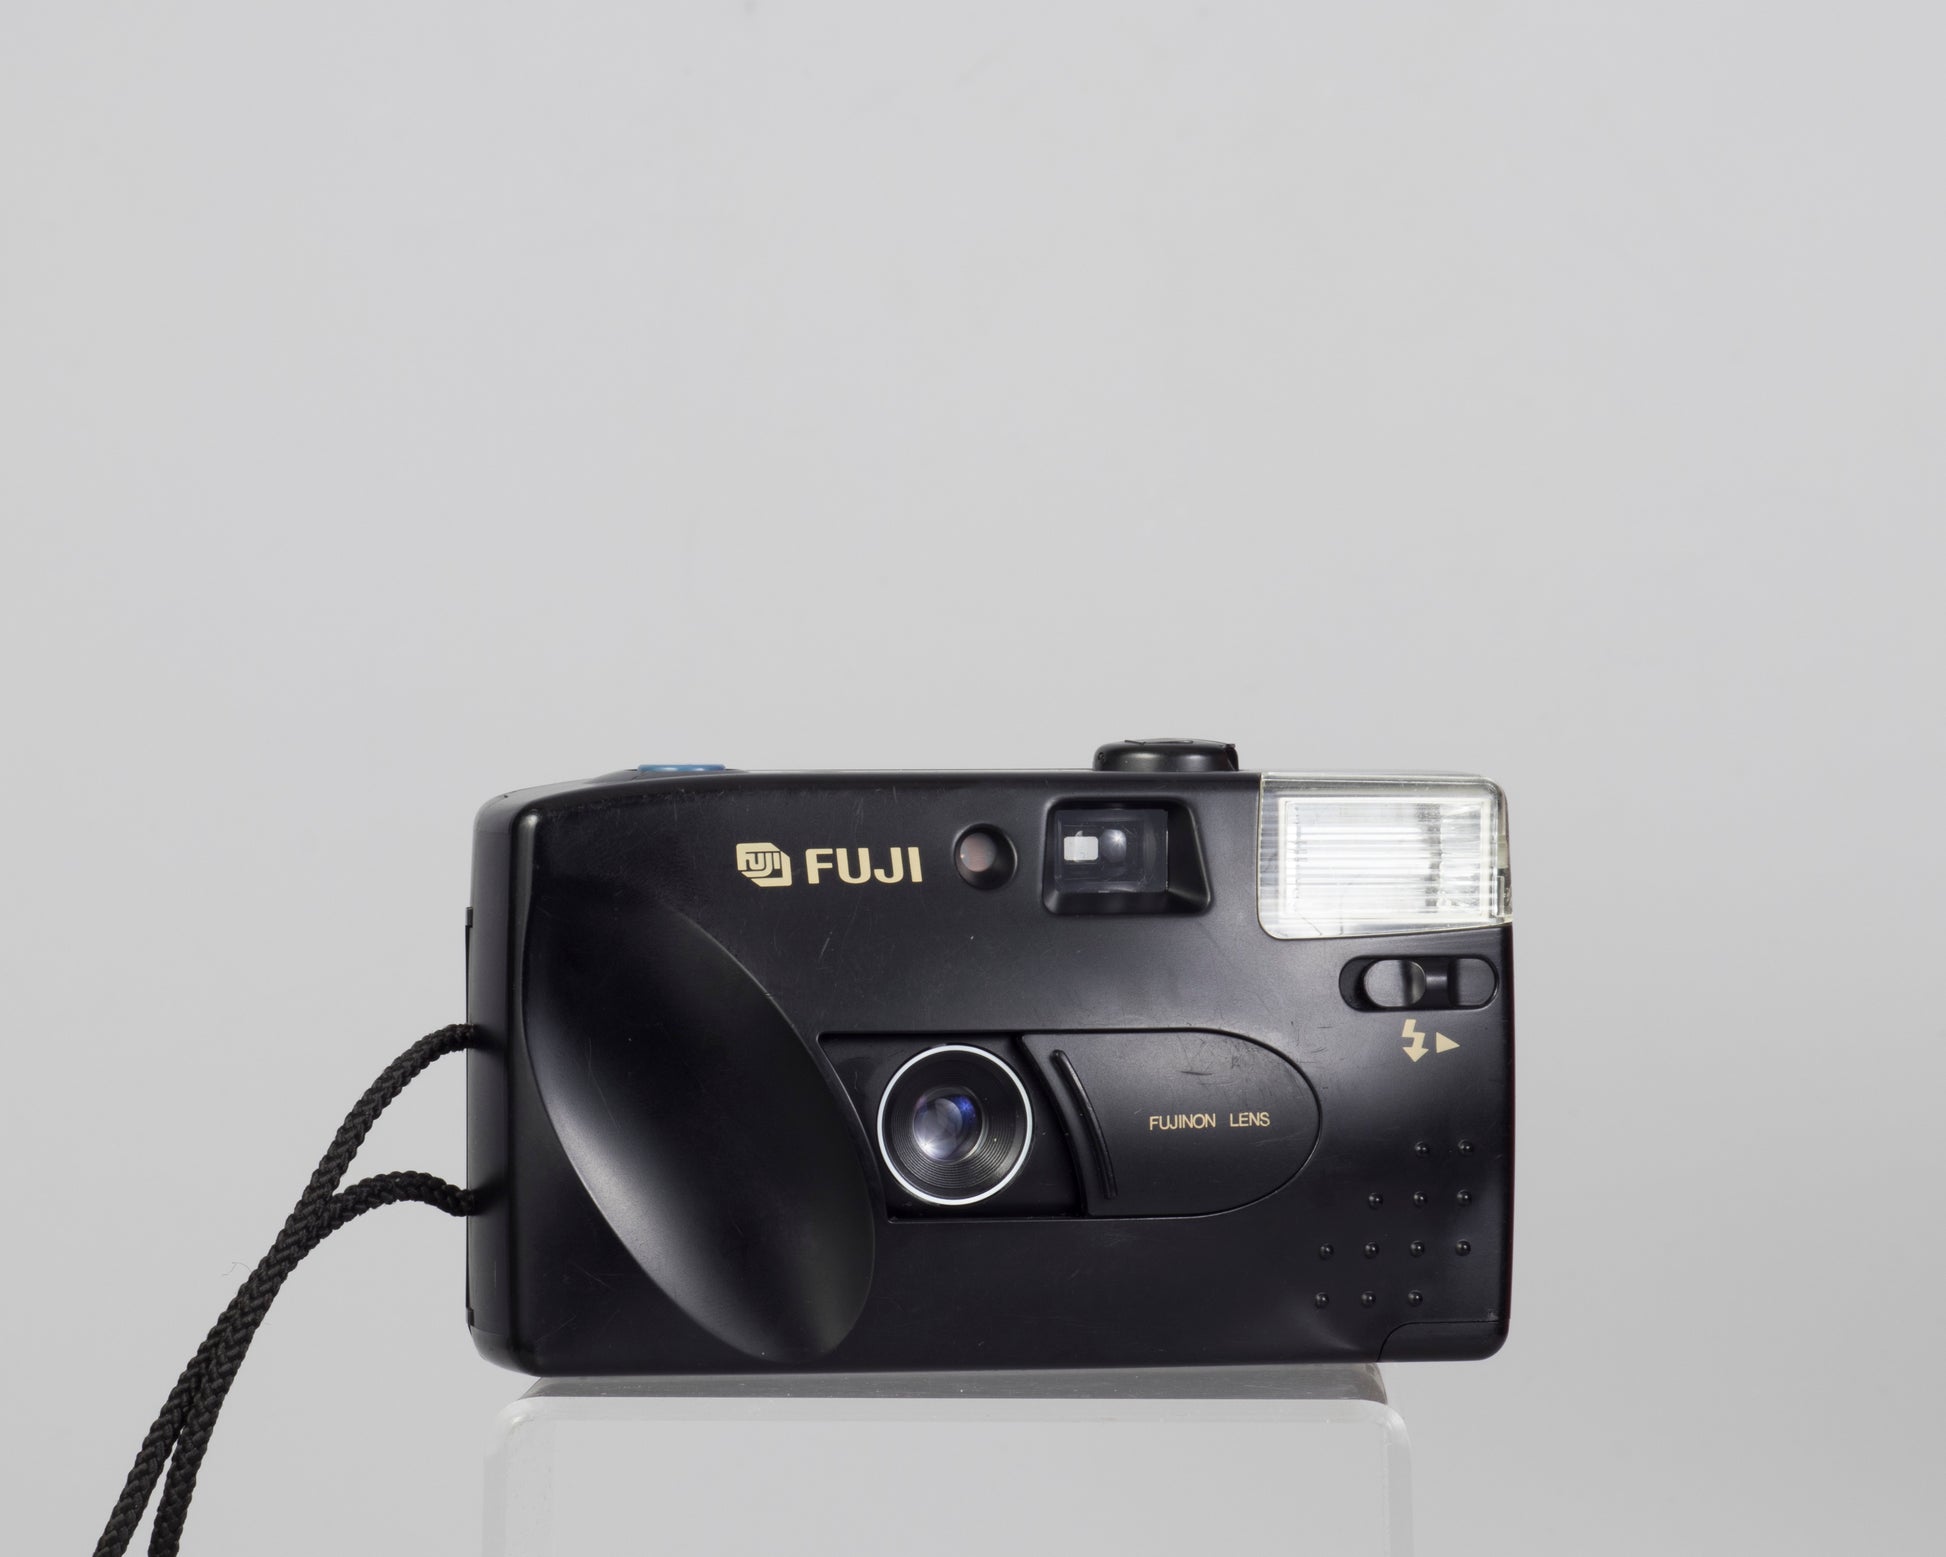 The Fujifilm DL-8 (aka DL-7) compact 35mm film camera